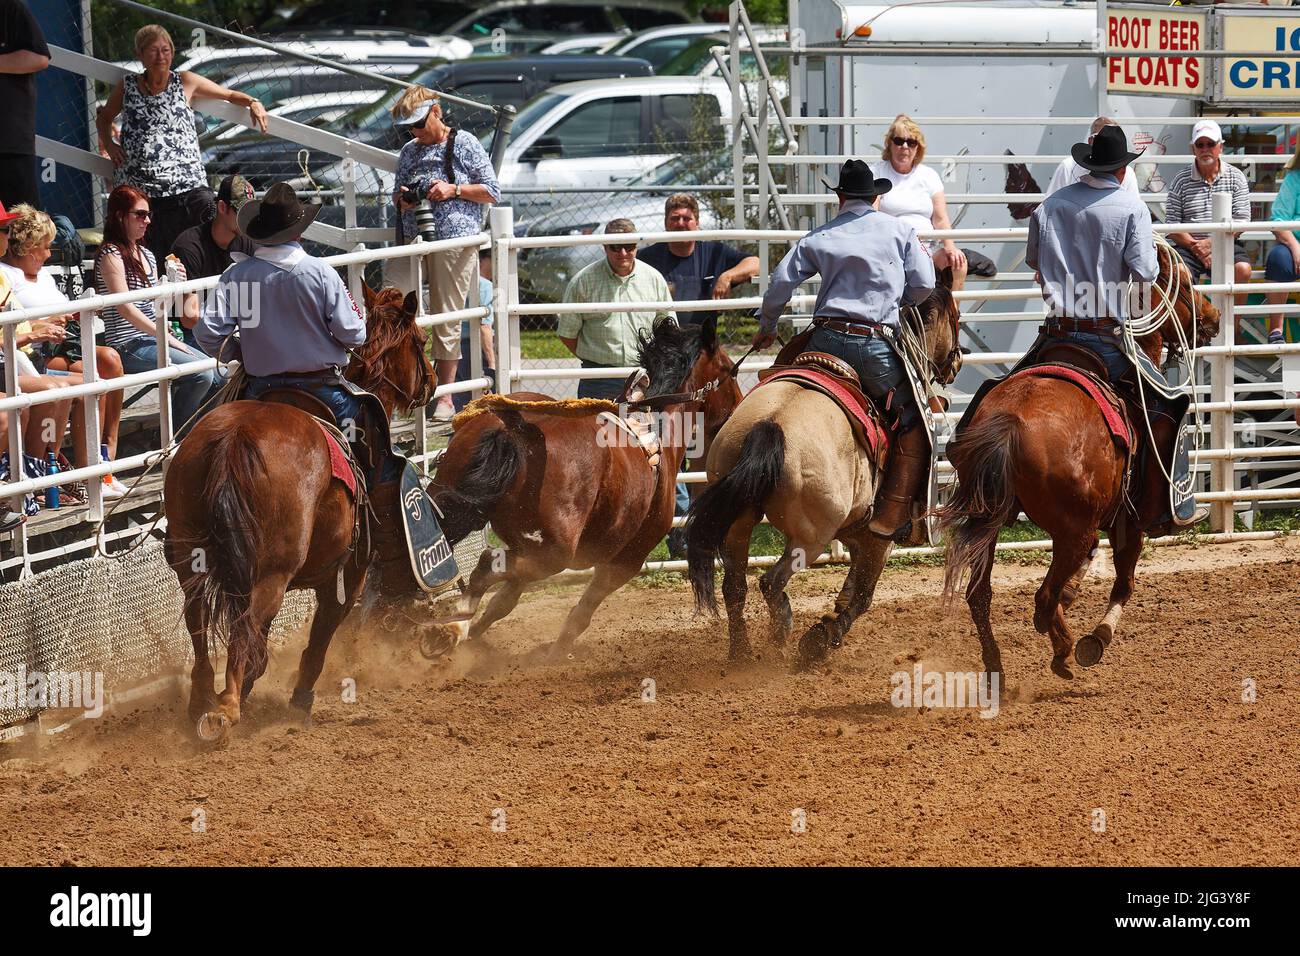 rodeo, hommes corraling cheval, travail, compétence, mouvement, spectateurs, concours, concours, animaux, personnes, Crowd, Floride; Arcadia; FL Banque D'Images